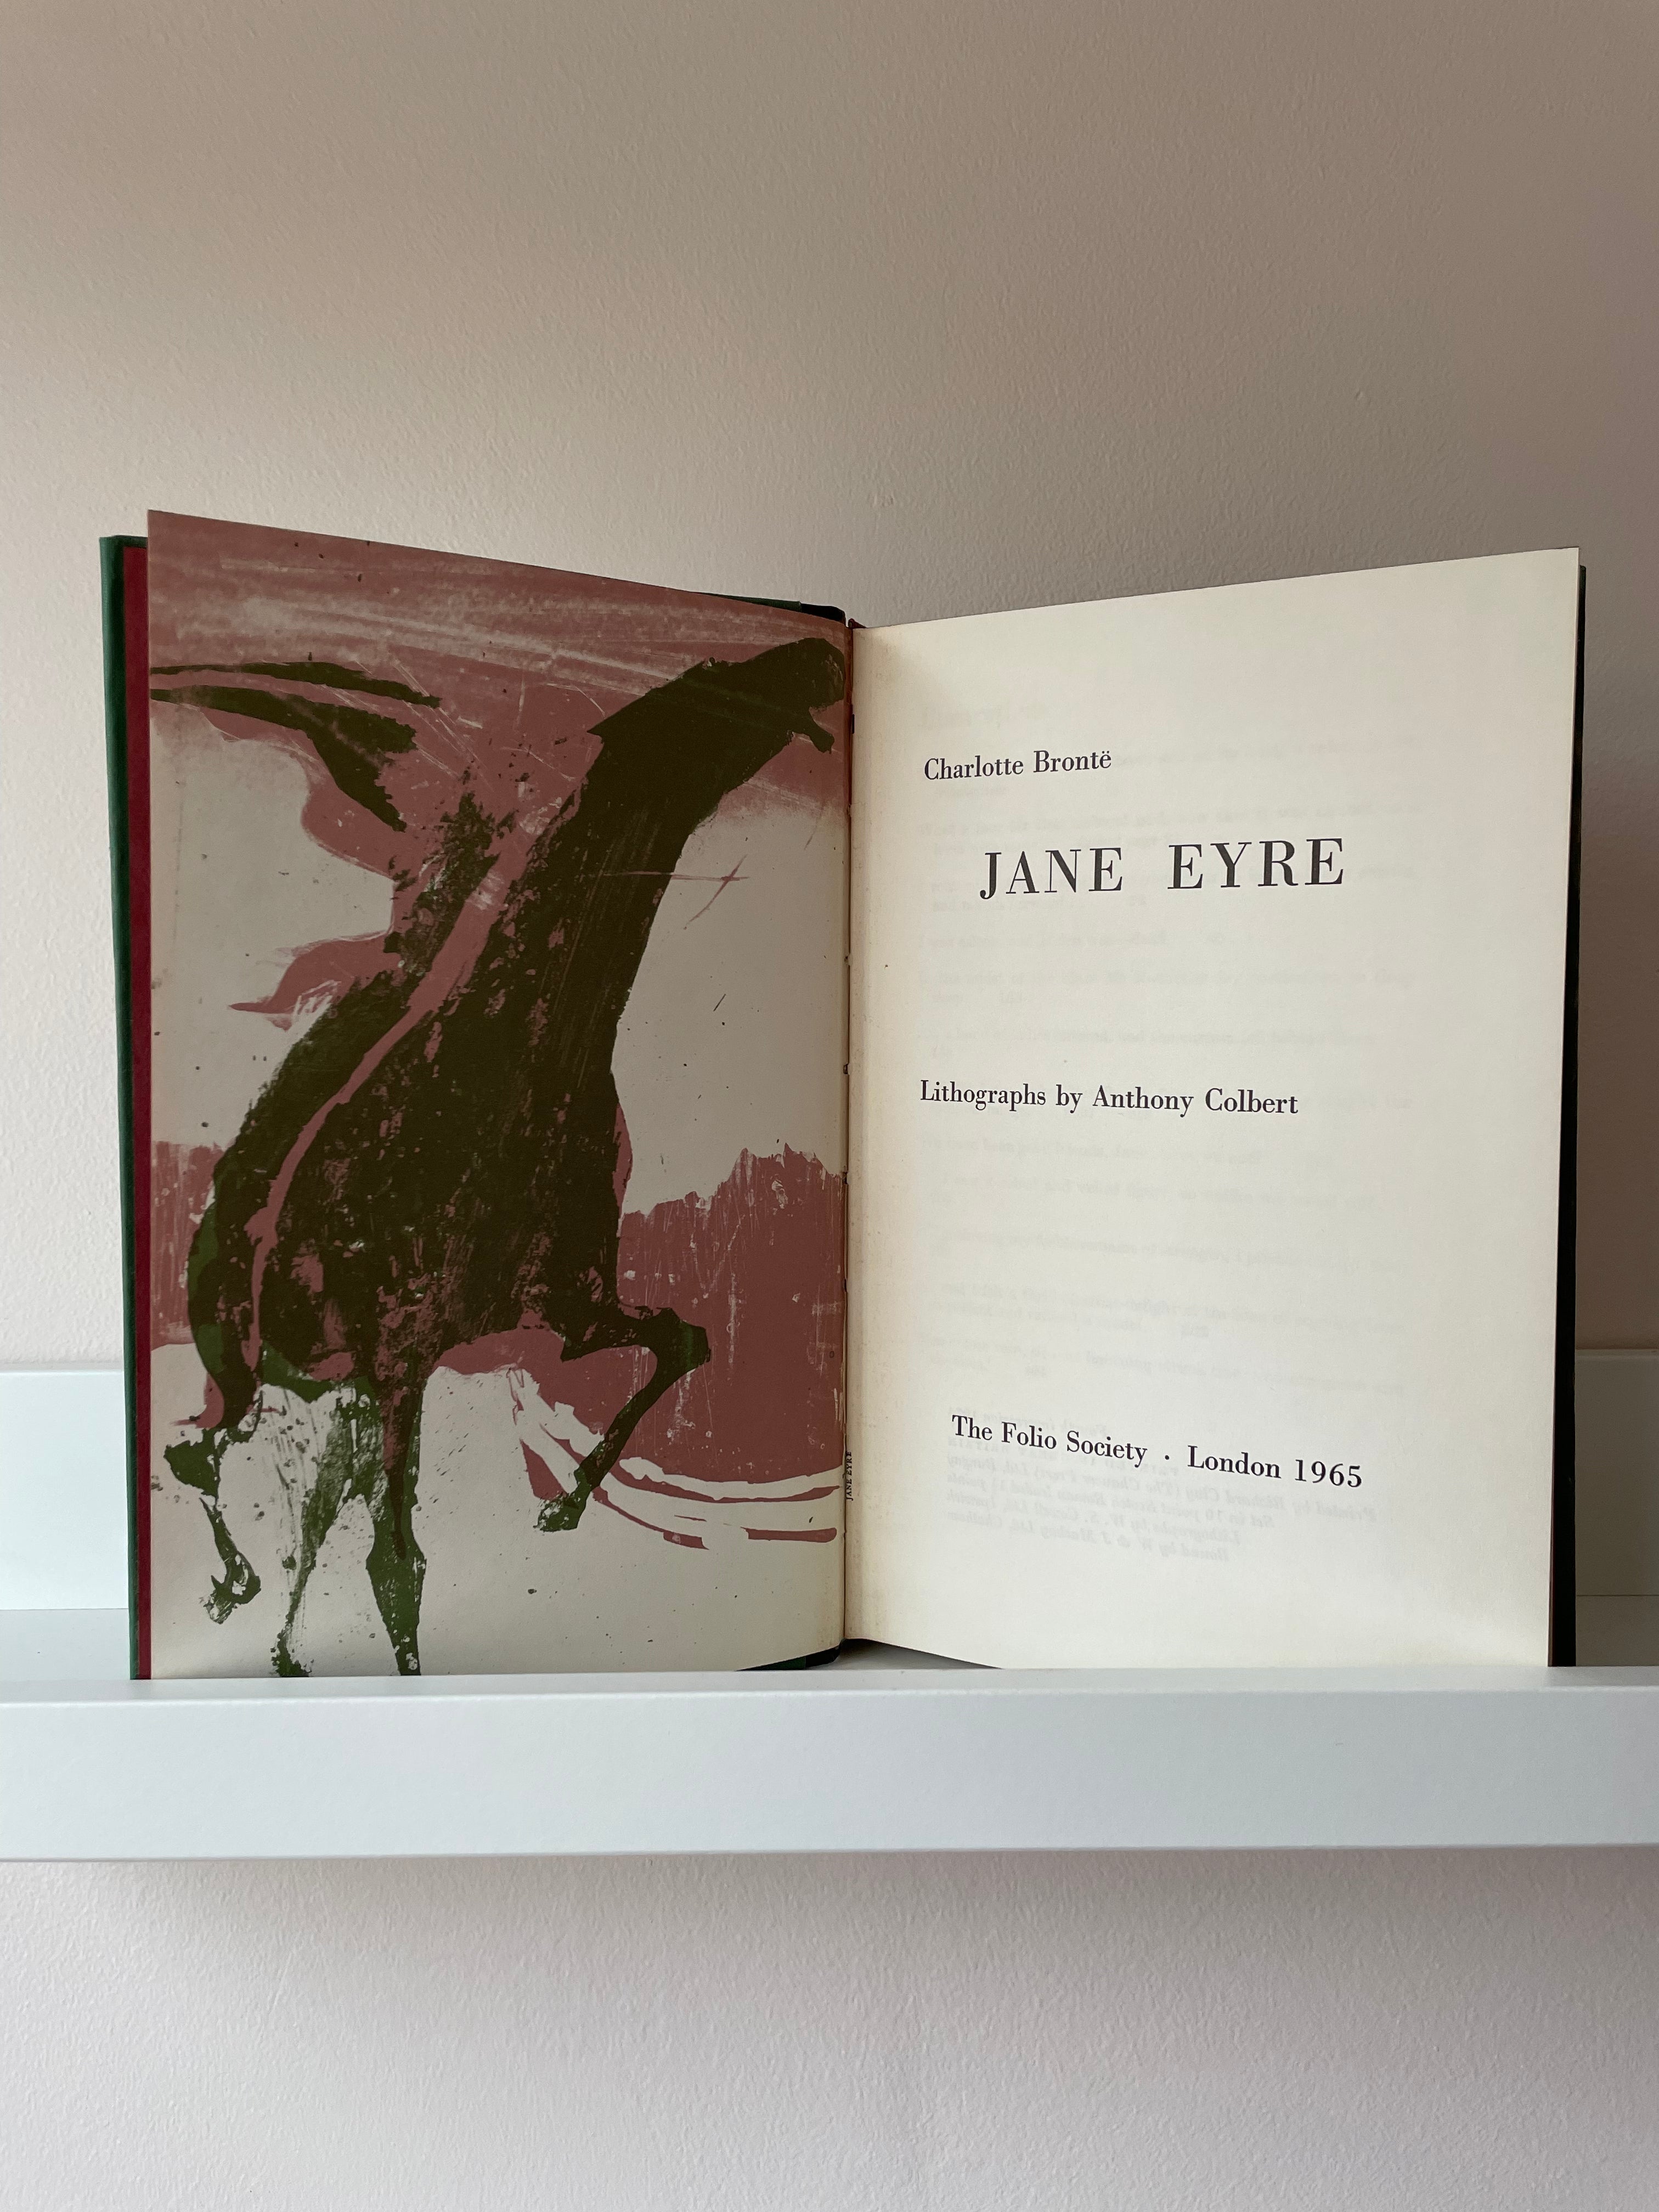 Charlotte Bronte, Jane Eyre